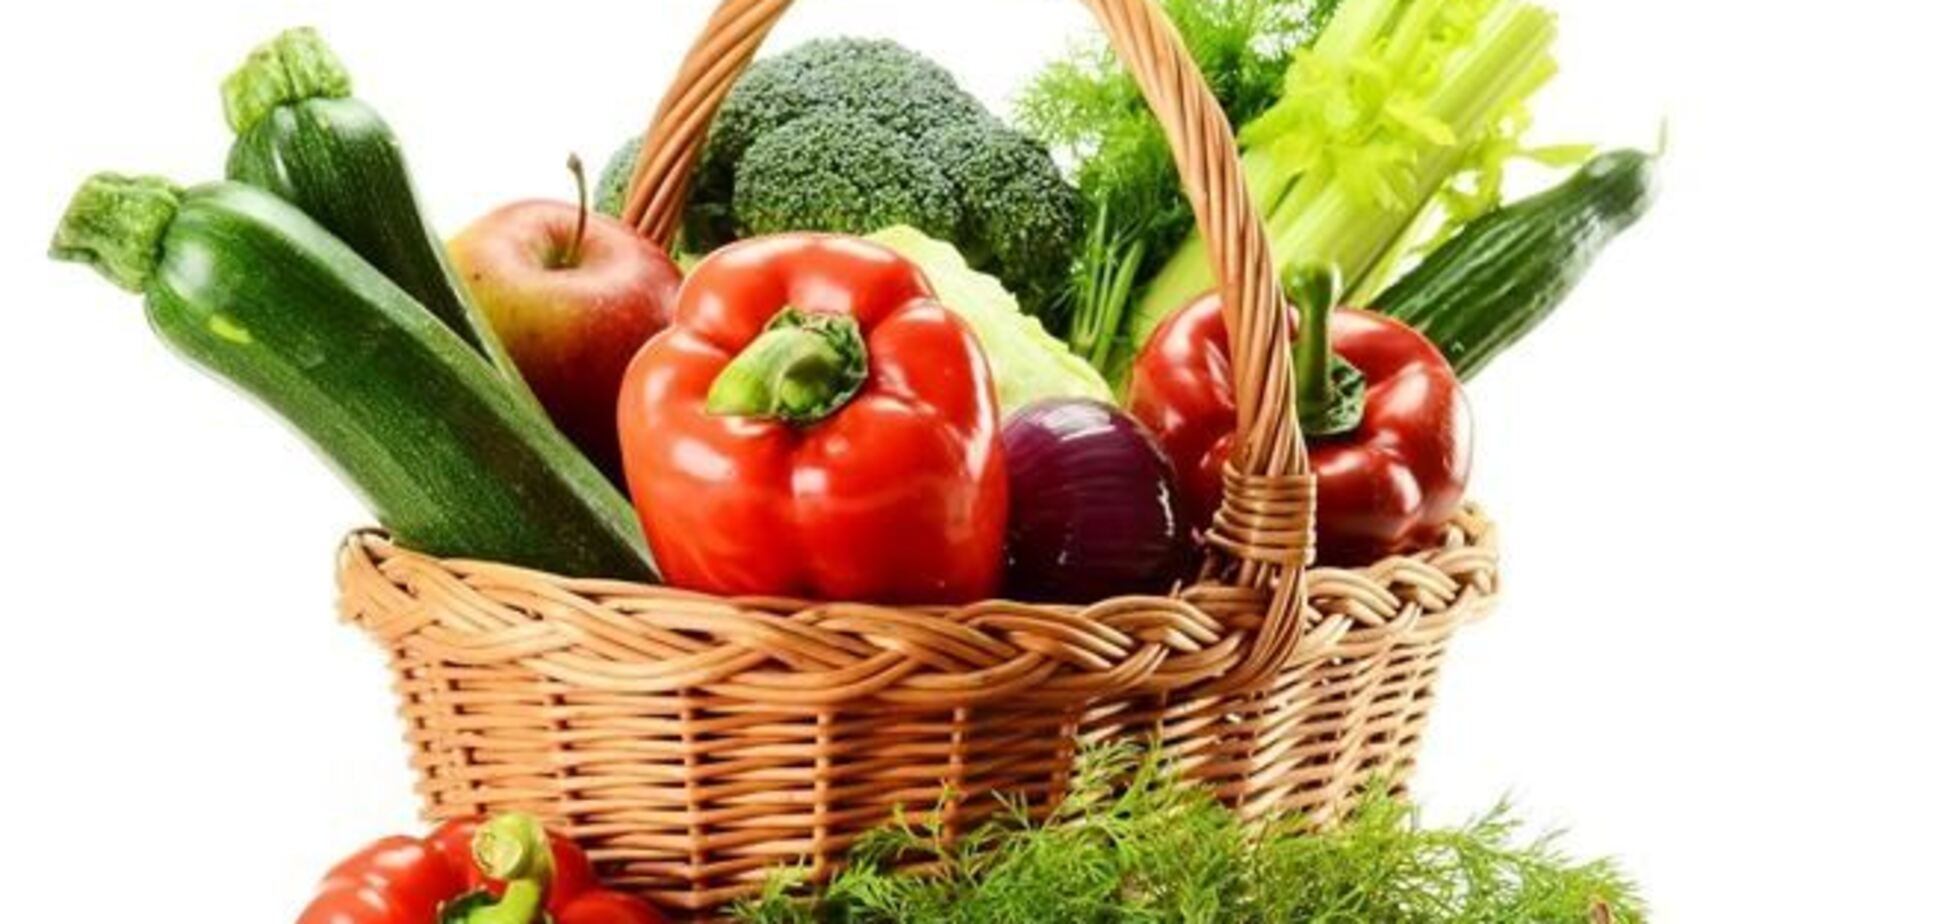 Февраль: фрукты и овощи 'в сезоне'